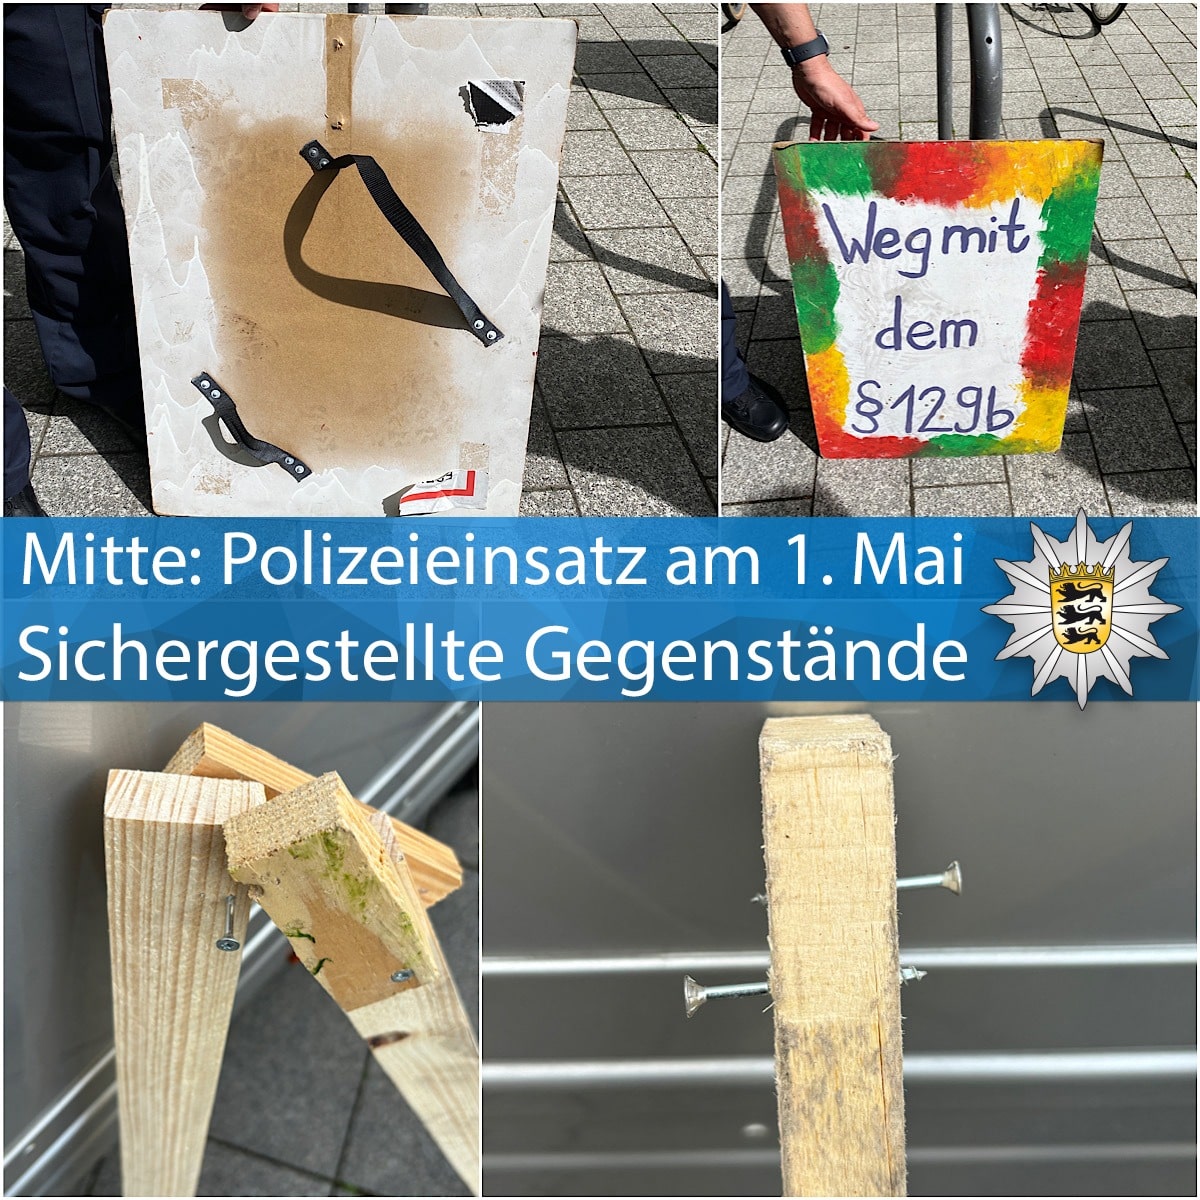 Blaulicht Polizei Bericht Stuttgart: Demonstrationsgeschehen am 1. Mai – Polizeieinsatz in der Innenstadt – …